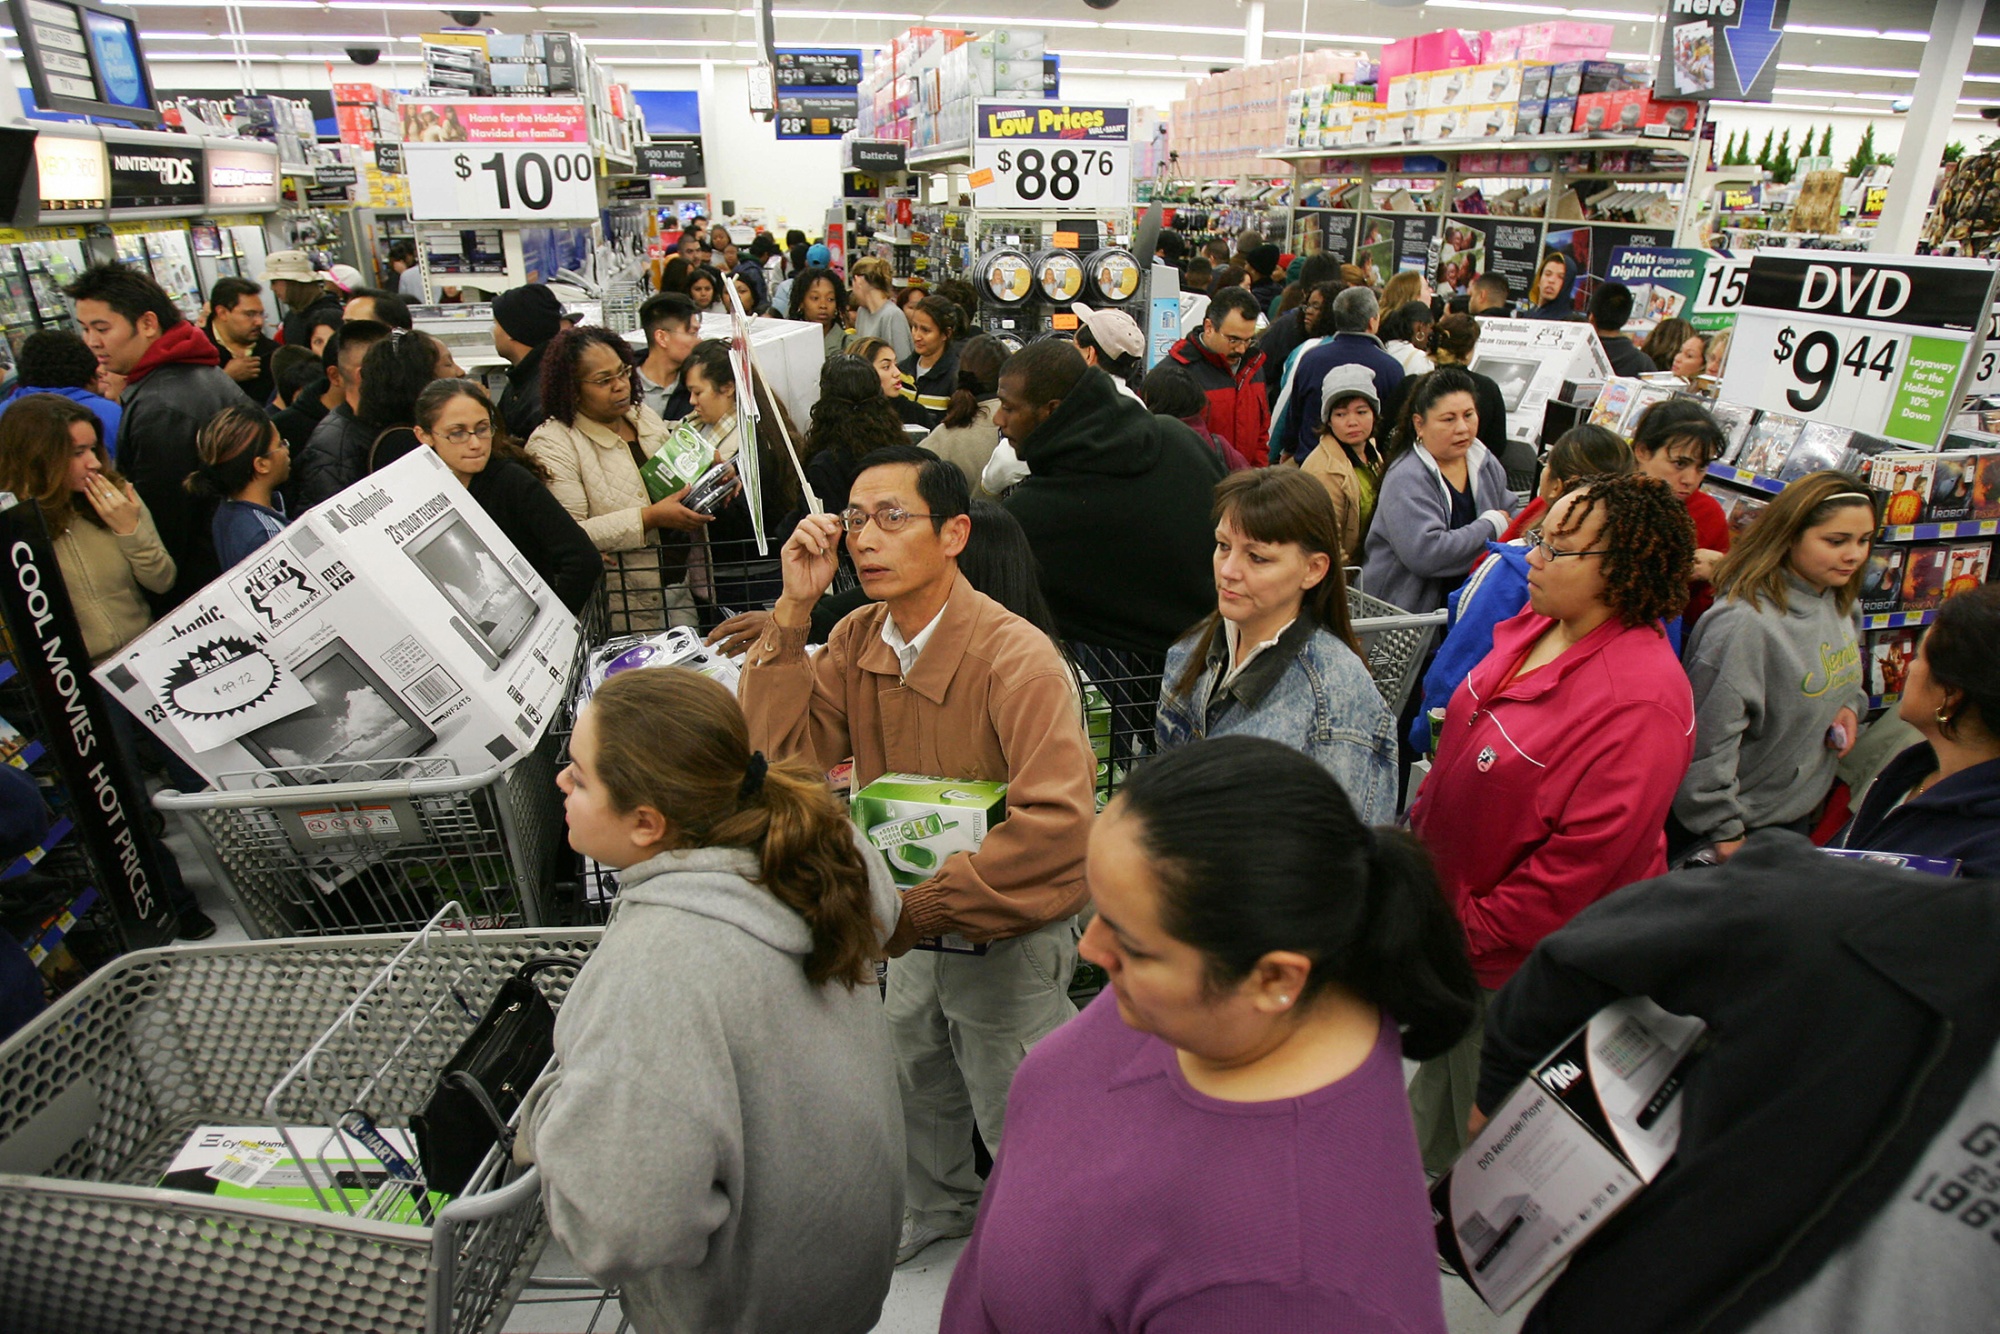 Walmart’s Black Friday Plan Caps Customer Capacity at Just 20 Bloomberg